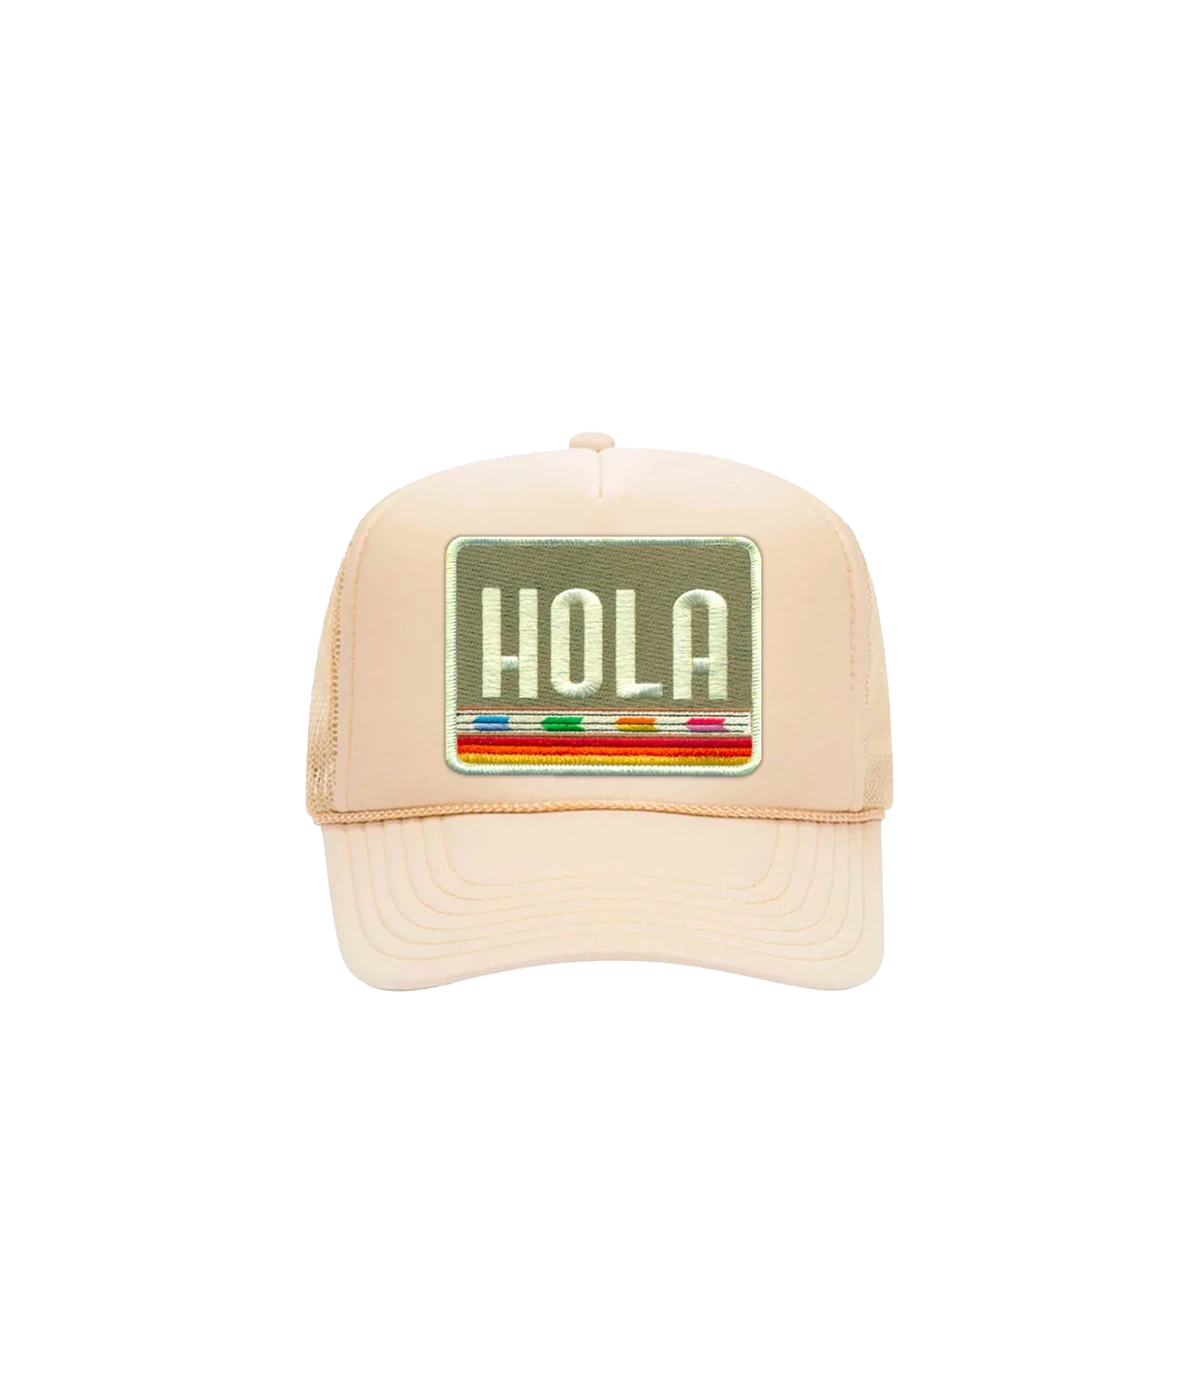 Hola Trucker Hat in Cream